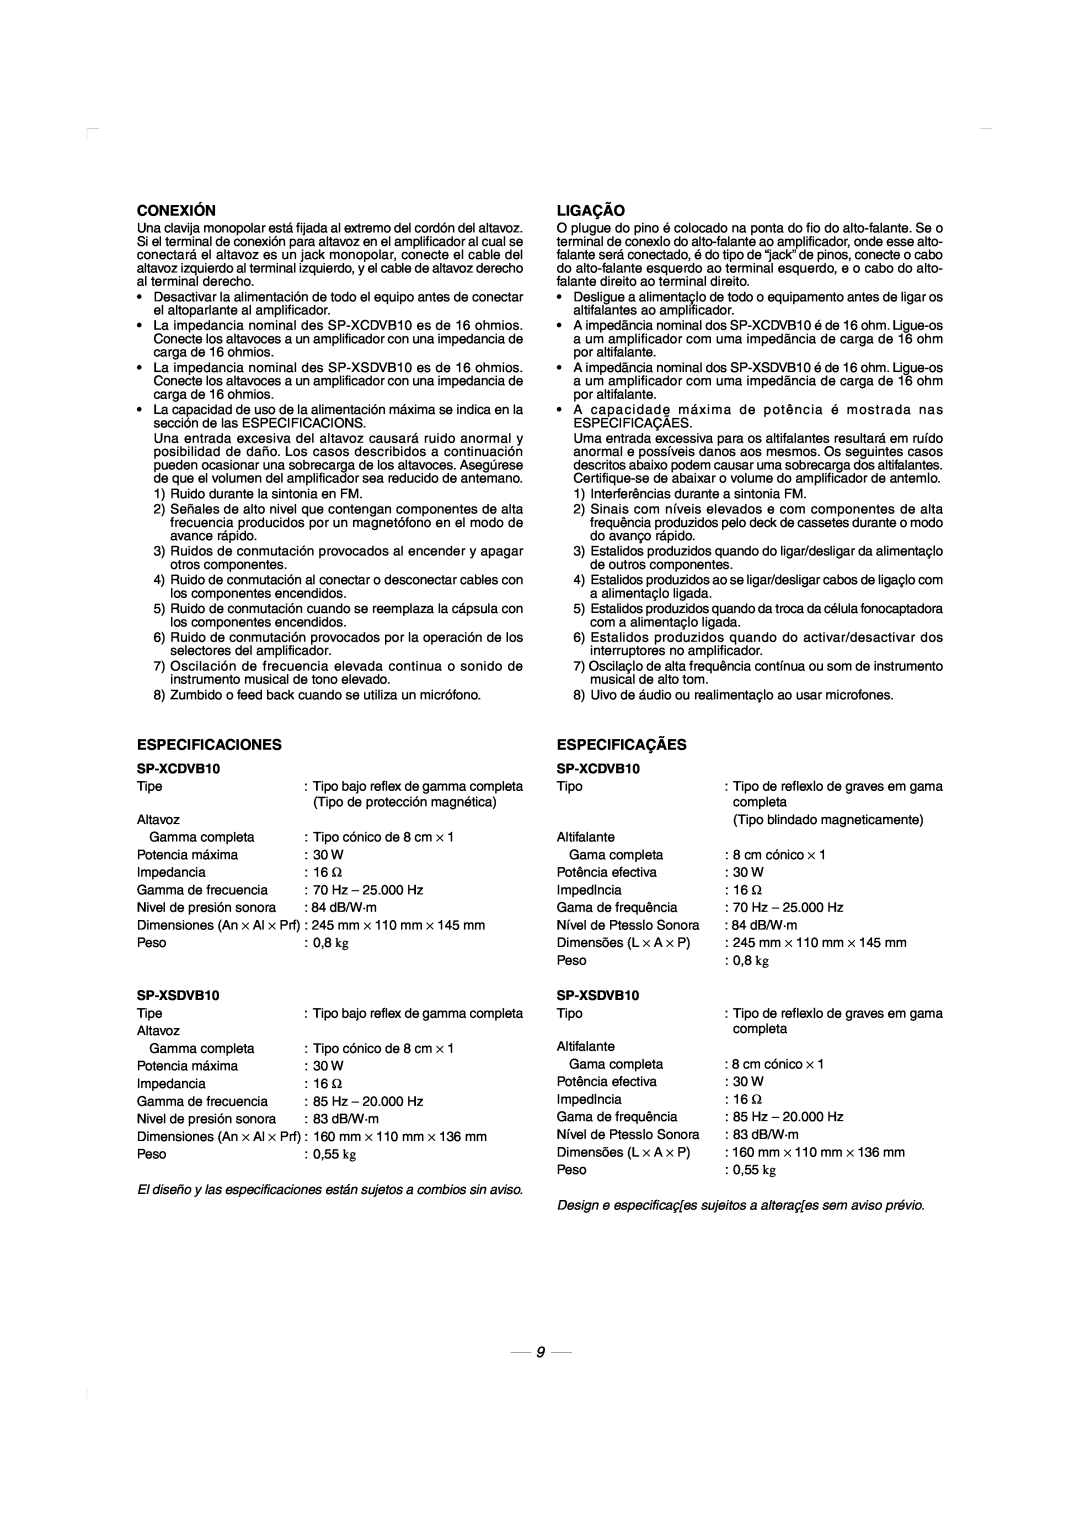 JVC CA-MXDVB10, CA-MXDVA9 manual Conexión, Ligação, Especificaciones, Especificaçães, SP-XCDVB10, SP-XSDVB10 